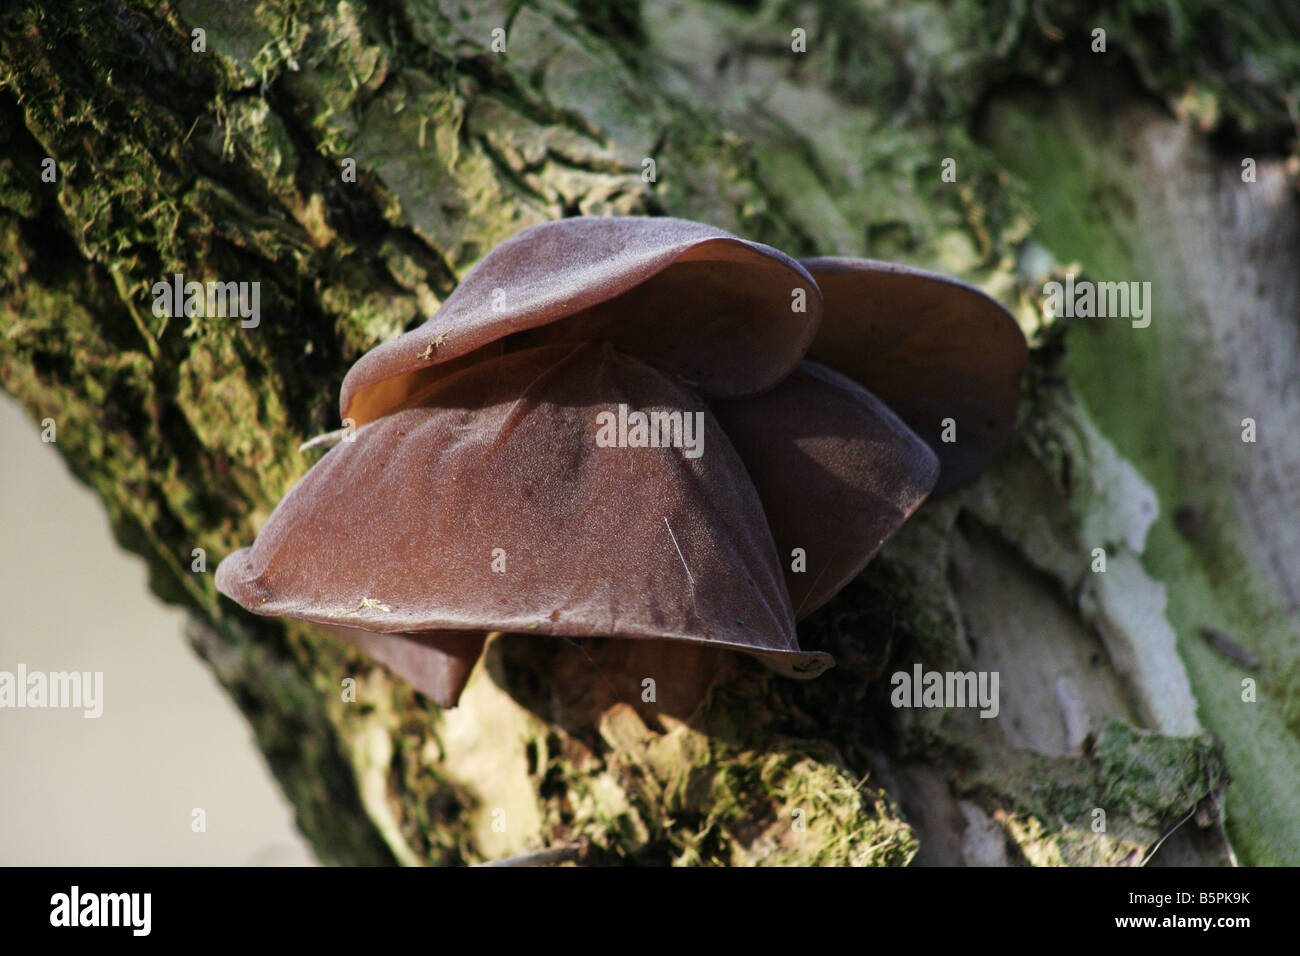 Jew's Ear Fungus Auricularia auricula-judae, Hirneola auricula-judae, growing on elder Stock Photo